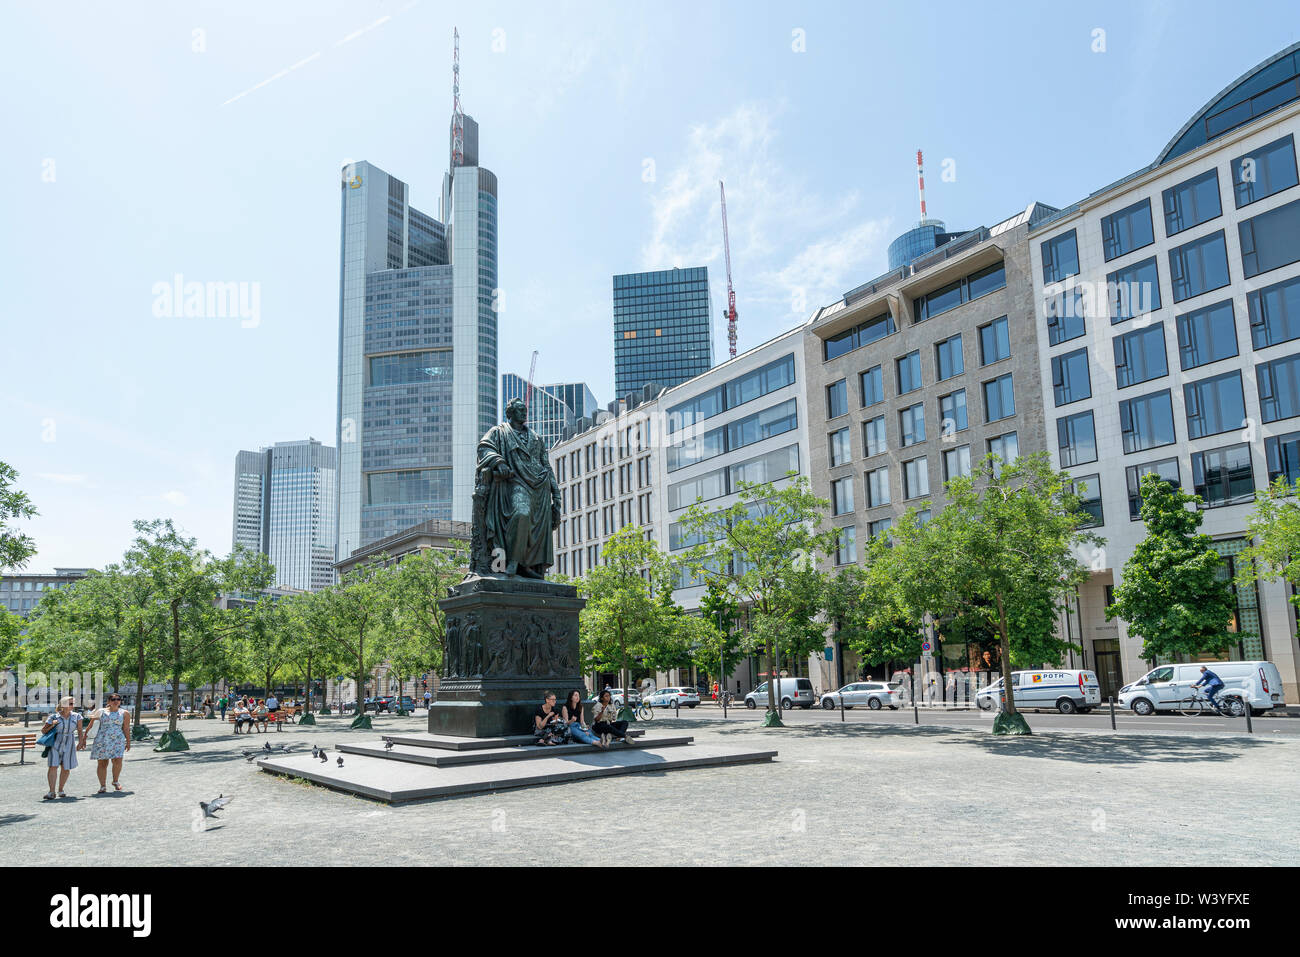 Frankfurt am Main, juillet 2019. Vue sur le monument et la statue de Goethe dans la place du même nom Banque D'Images